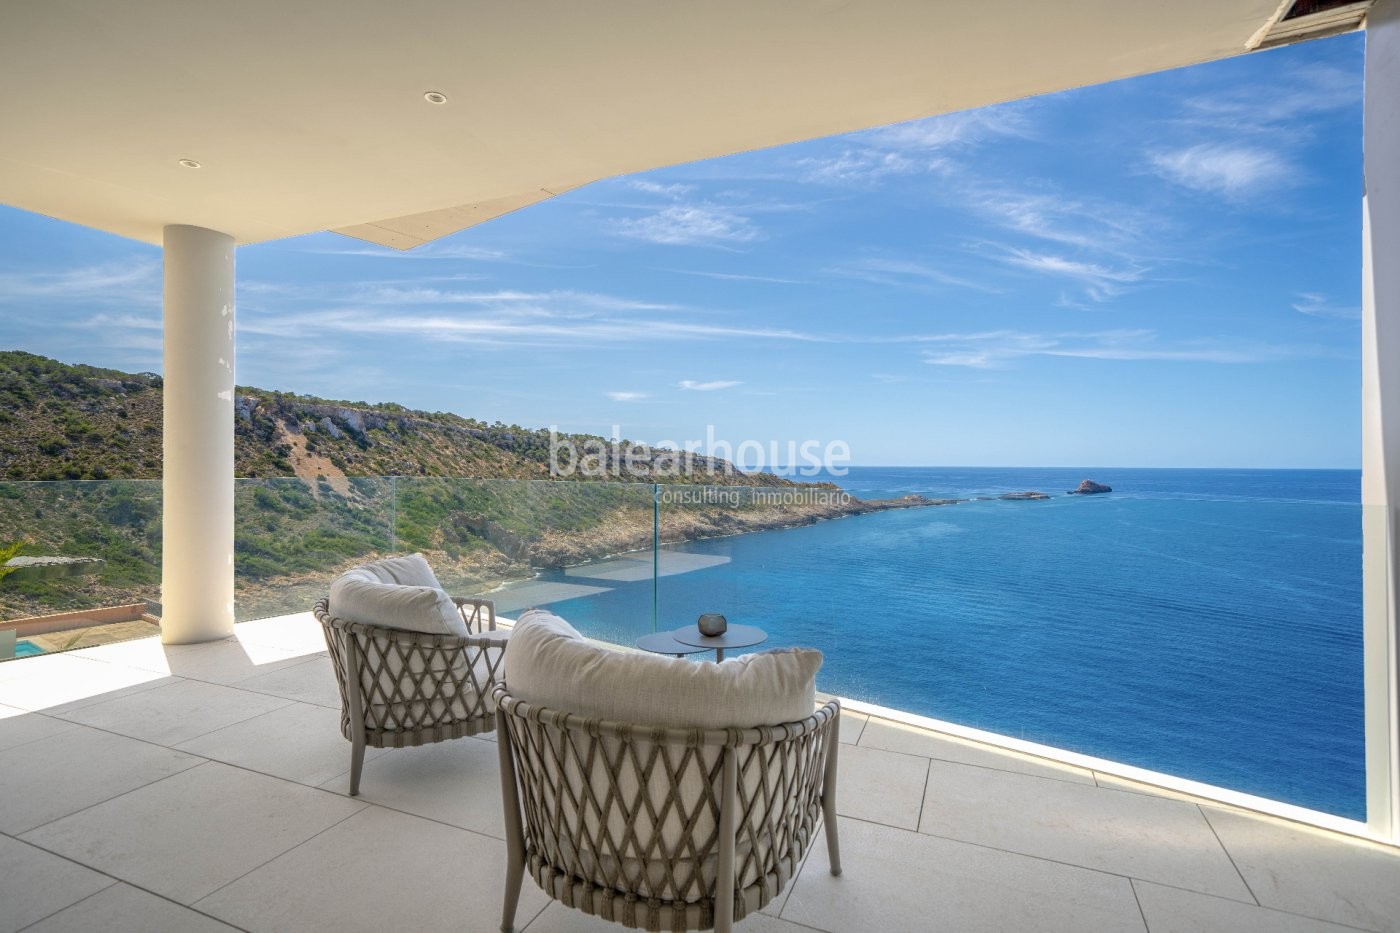 Beeindruckende Villa direkt am Meer mit spektakulärem Blick auf das Mittelmeer.